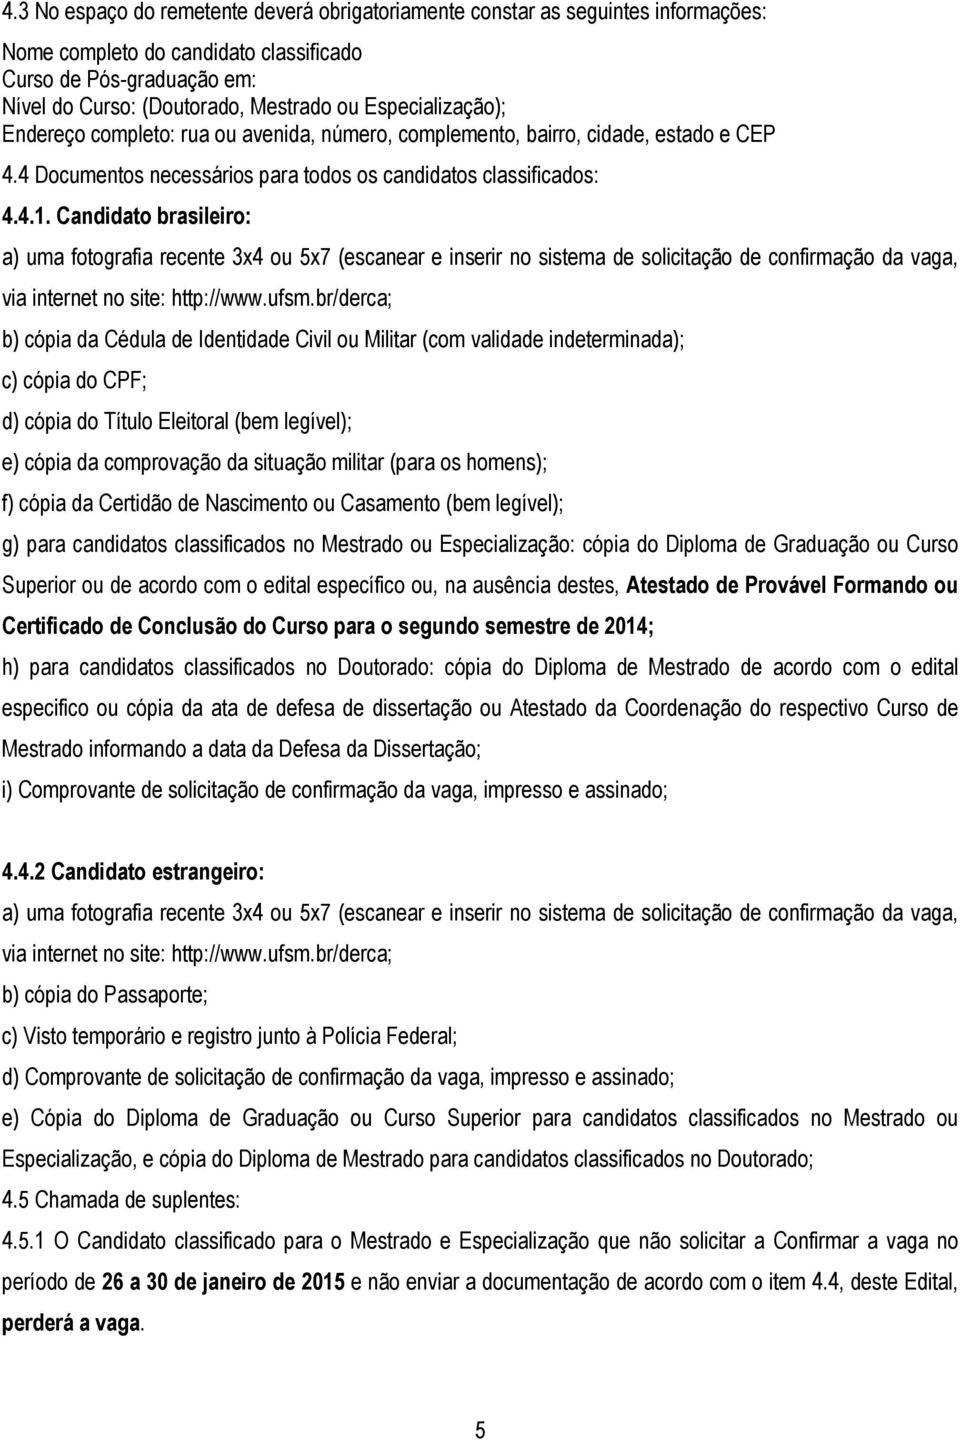 Candidato brasileiro: a) uma fotografia recente 3x4 ou 5x7 (escanear e inserir no sistema de solicitação de confirmação da vaga, via internet no site: http://www.ufsm.